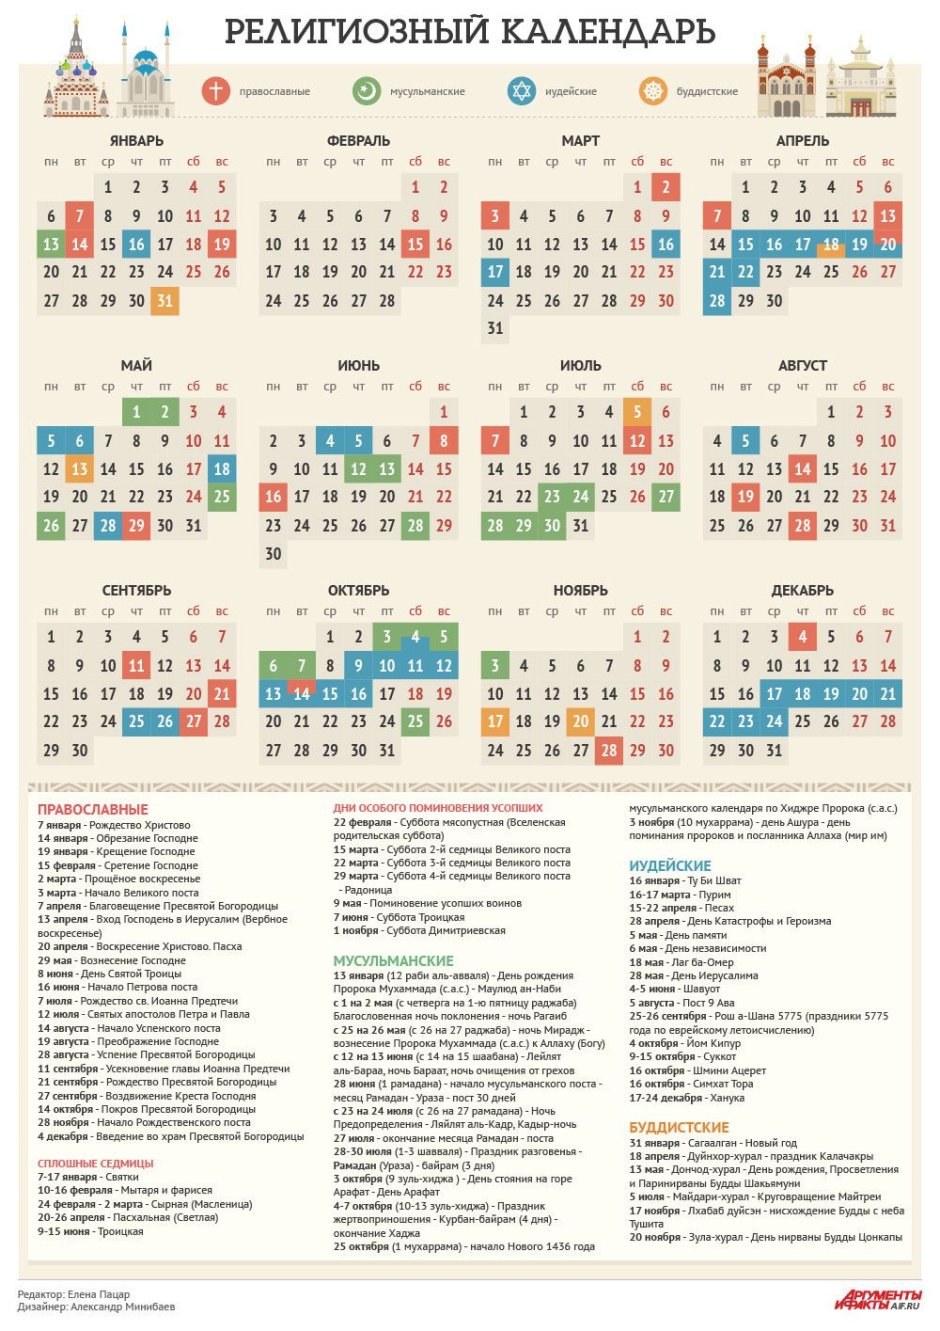 Календари и праздники в религиях